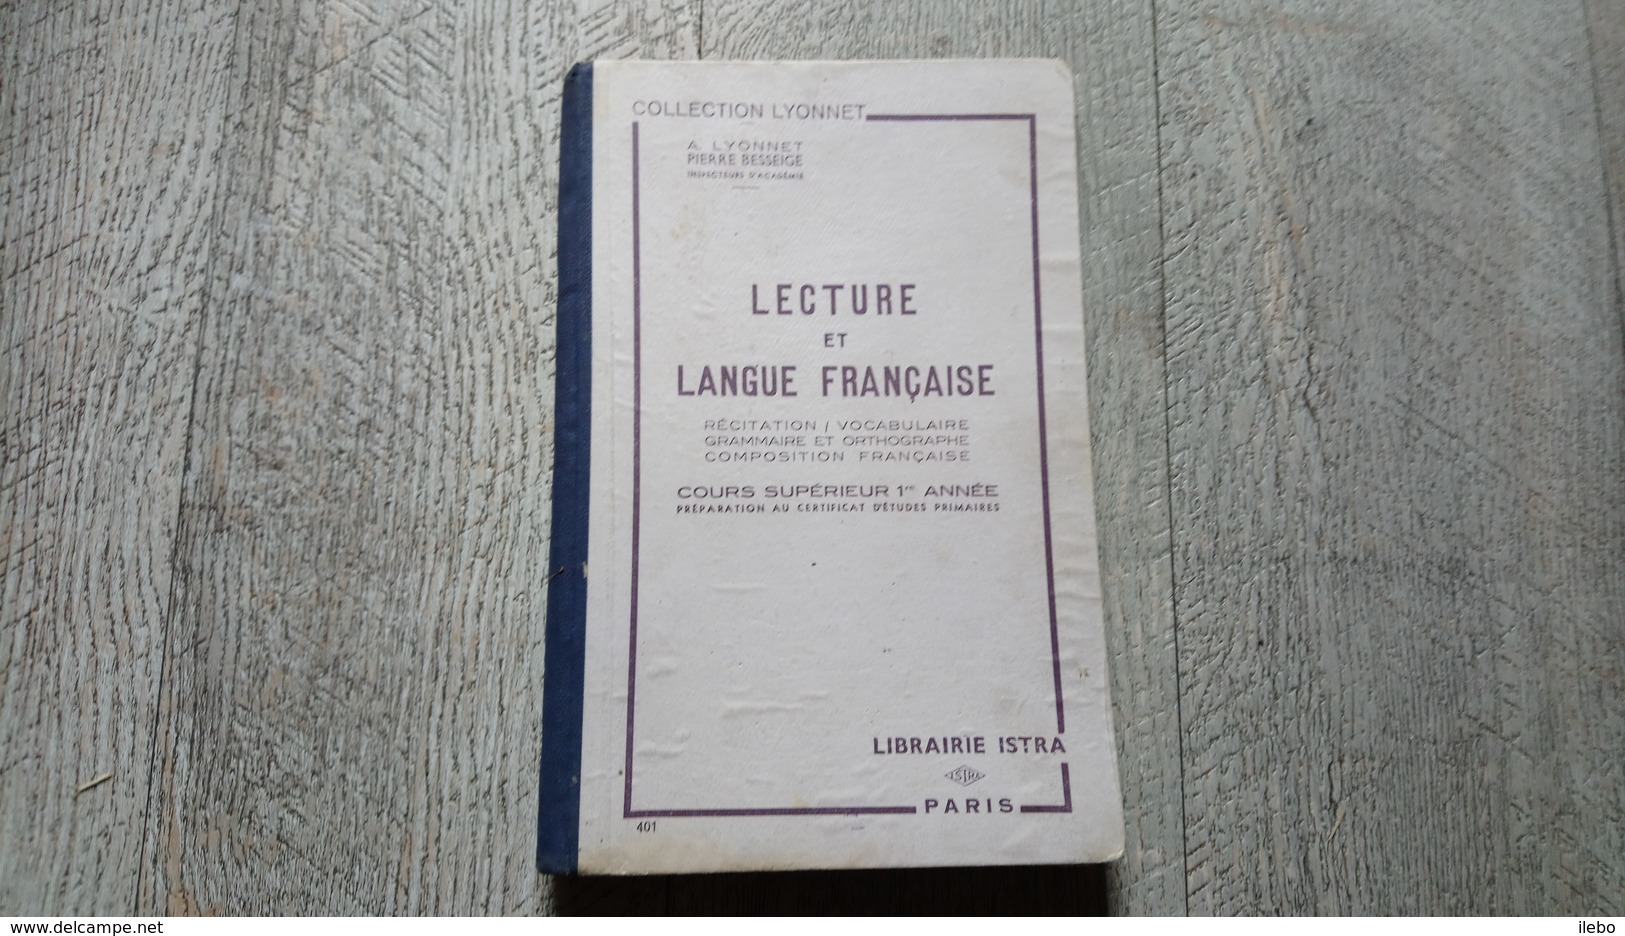 Lecture Et Langue Française Récitation Vocabulaire Grammaire Orthographe Composition Cours Supérieur 1ère Année Lyonnet - 12-18 Years Old